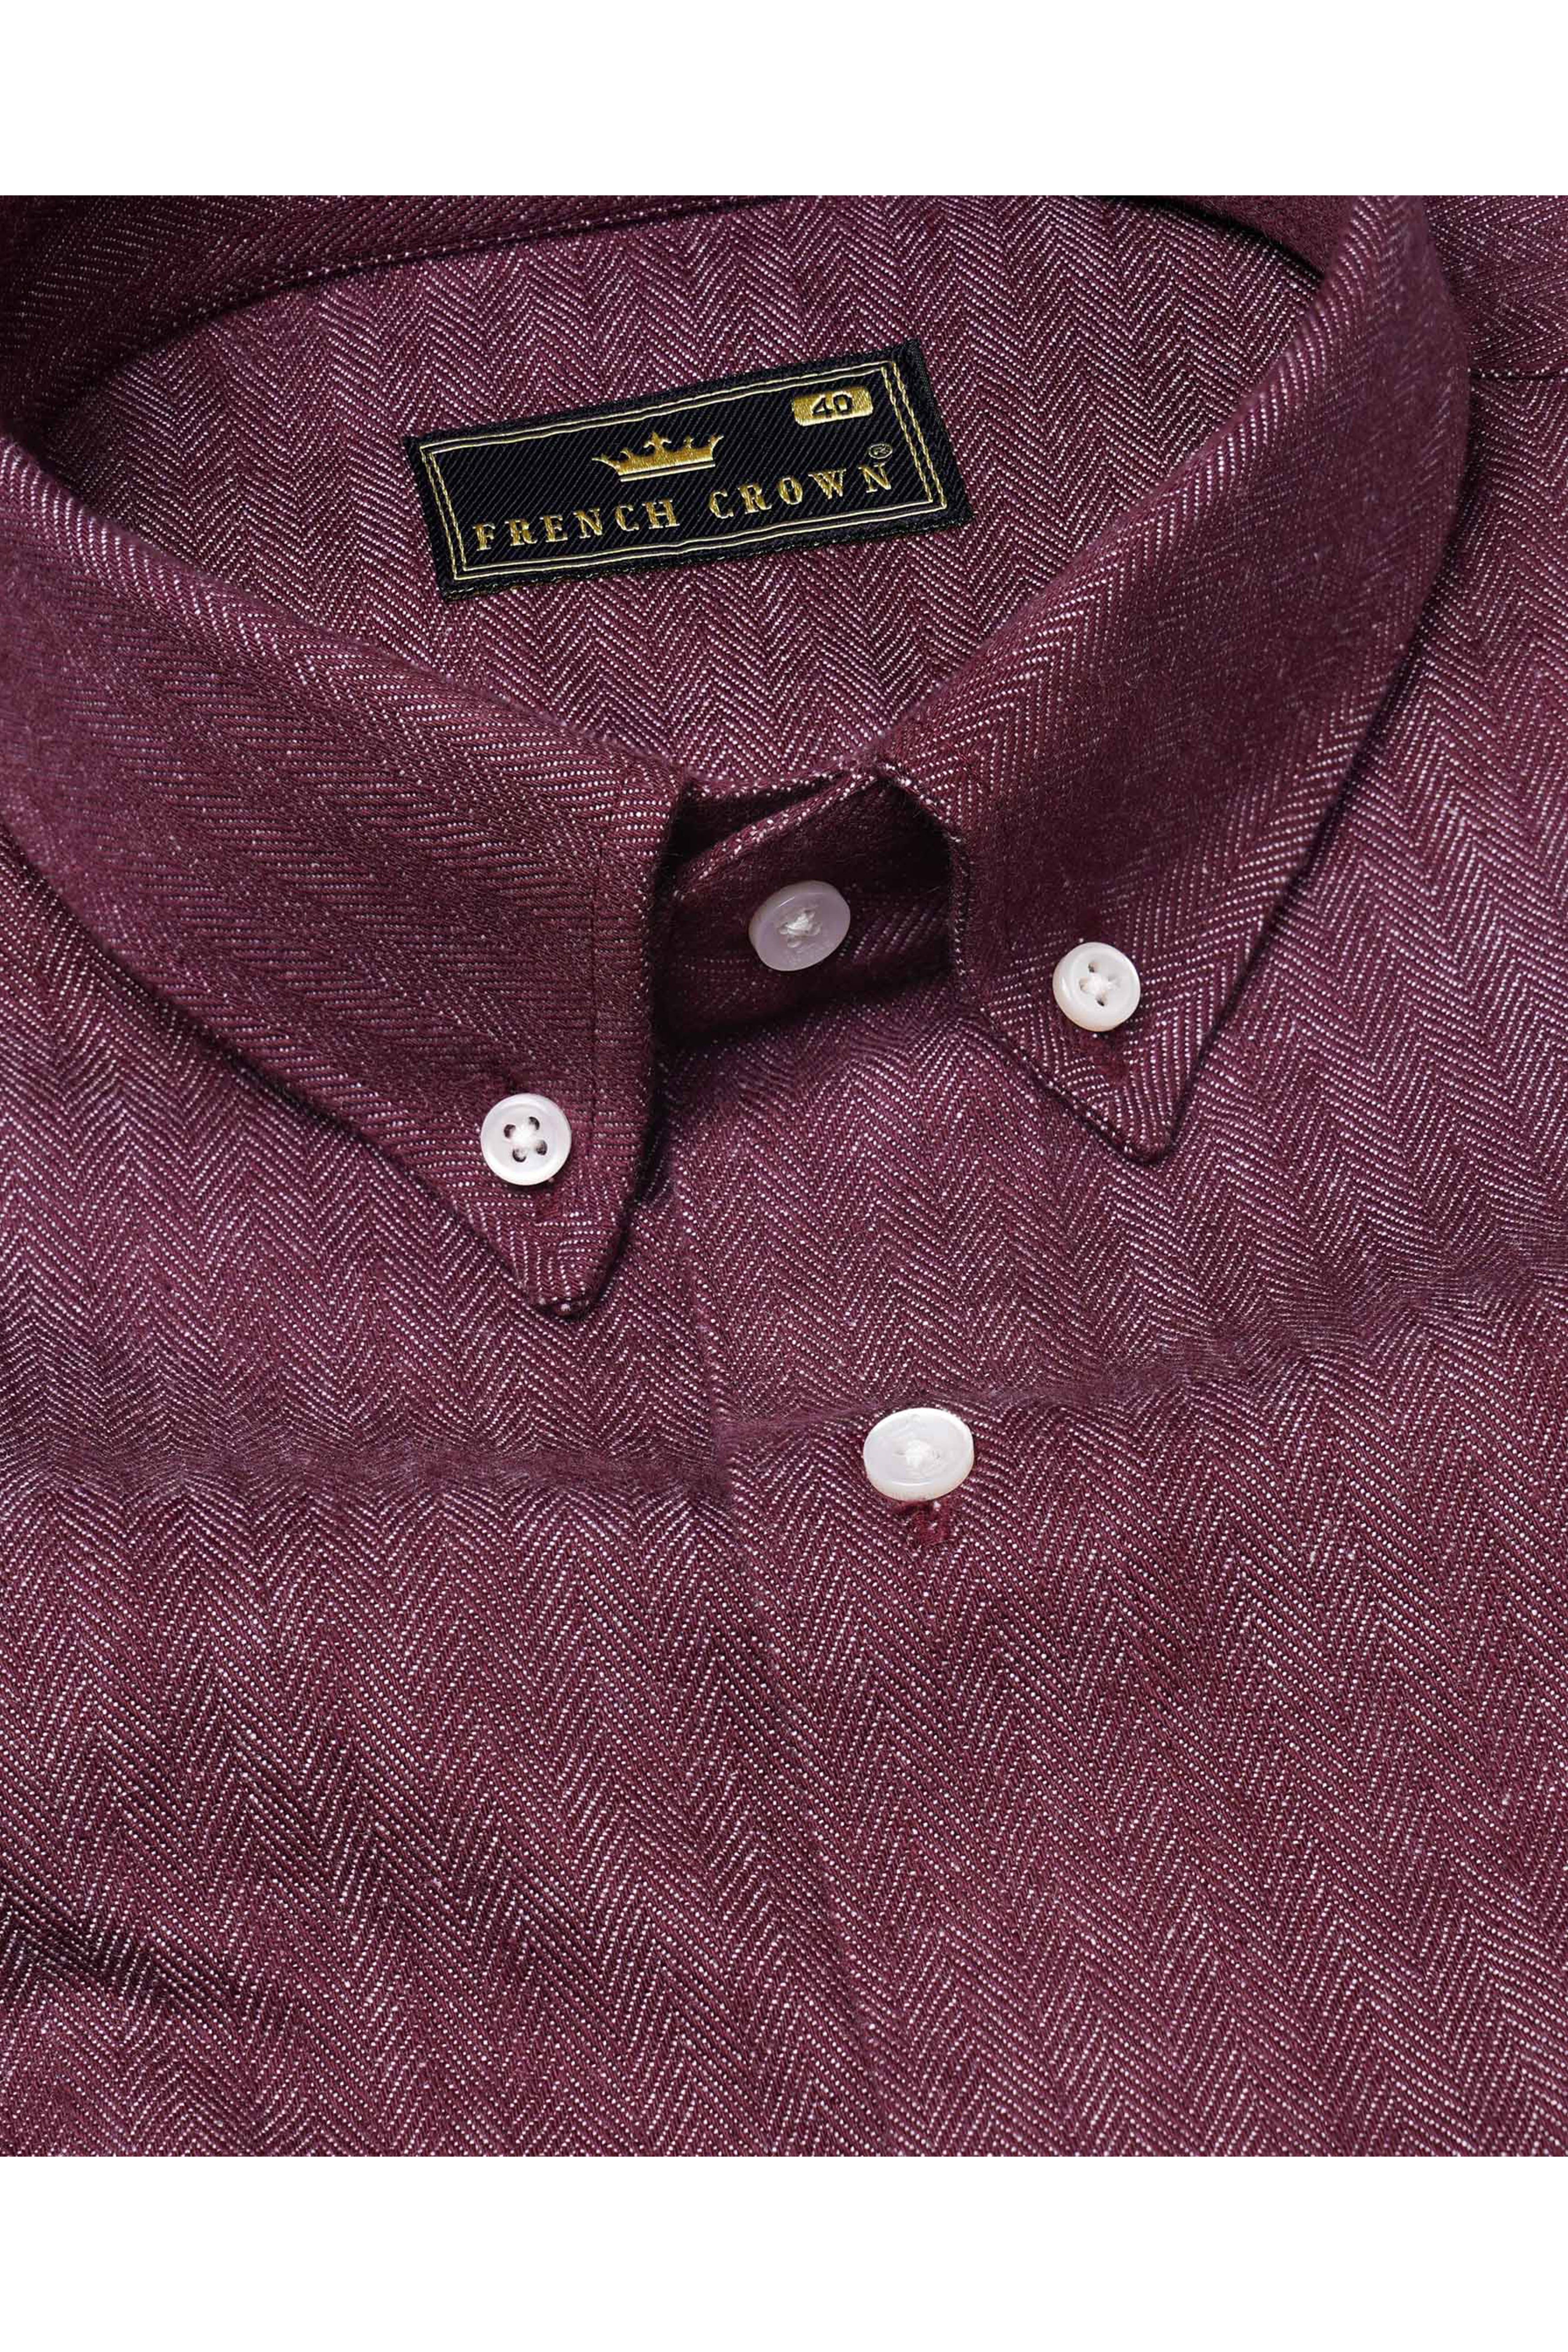 Finn Brown Horse Printed Herringbone Button-Down Designer Shirt